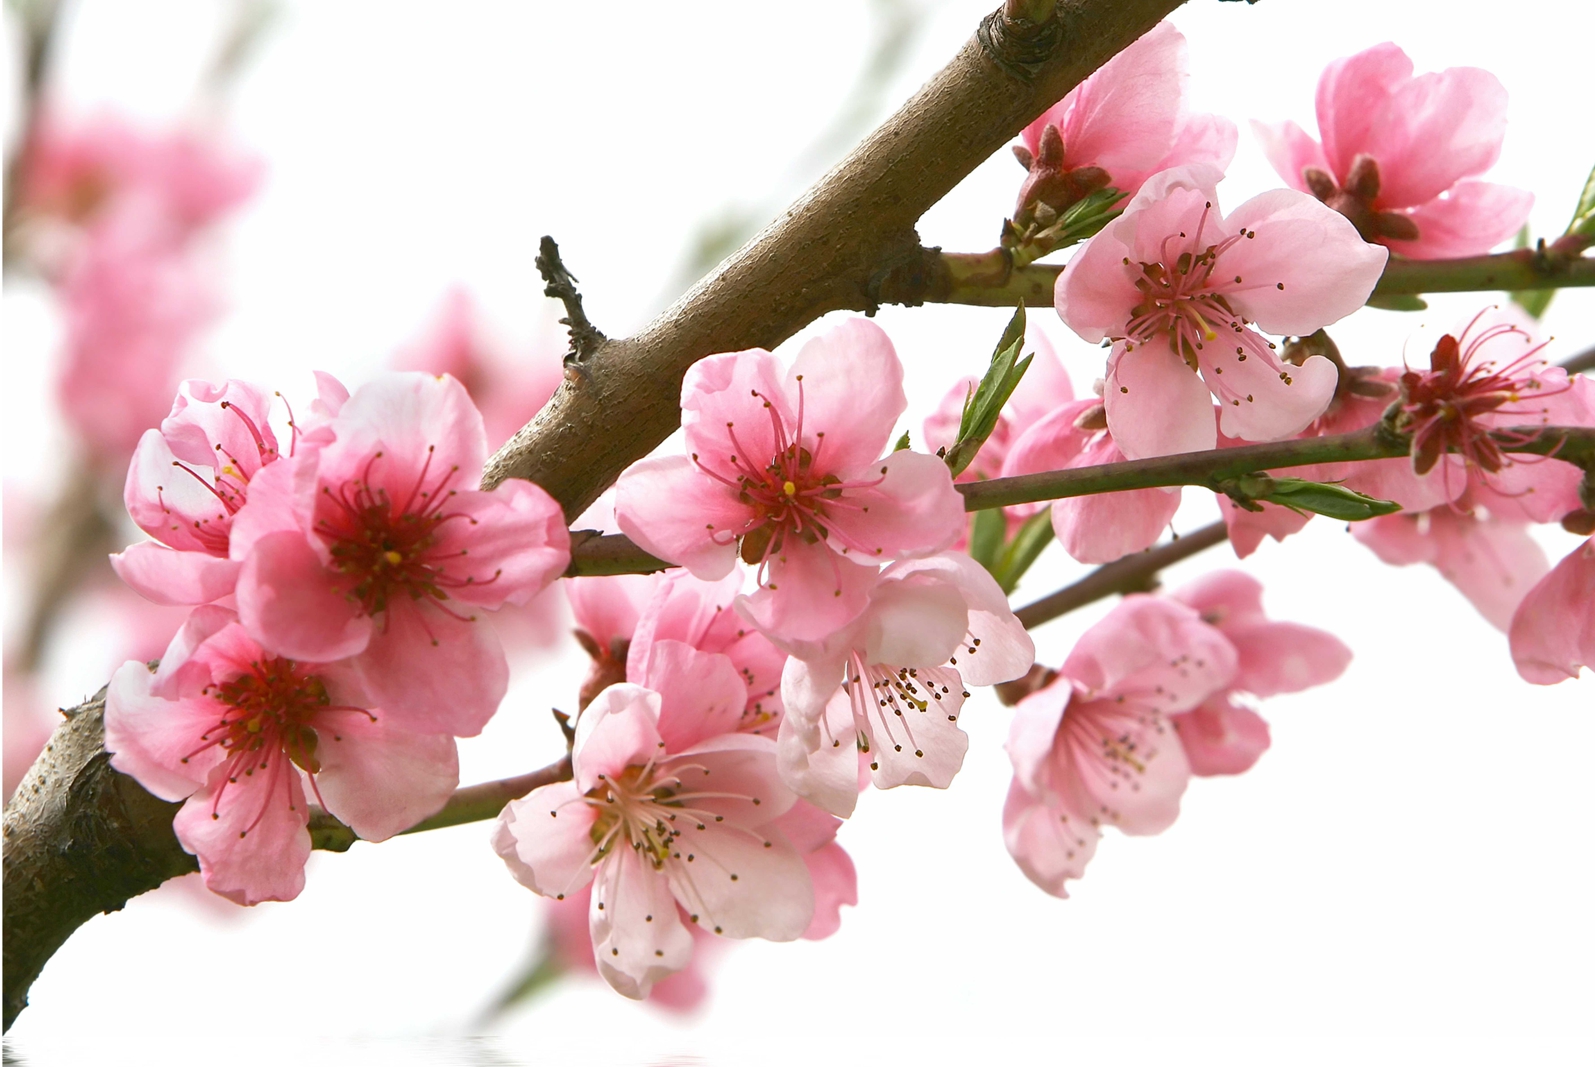 Magnettafel Pinnwand XXL Bild Blumen Kirschblüten Frühling